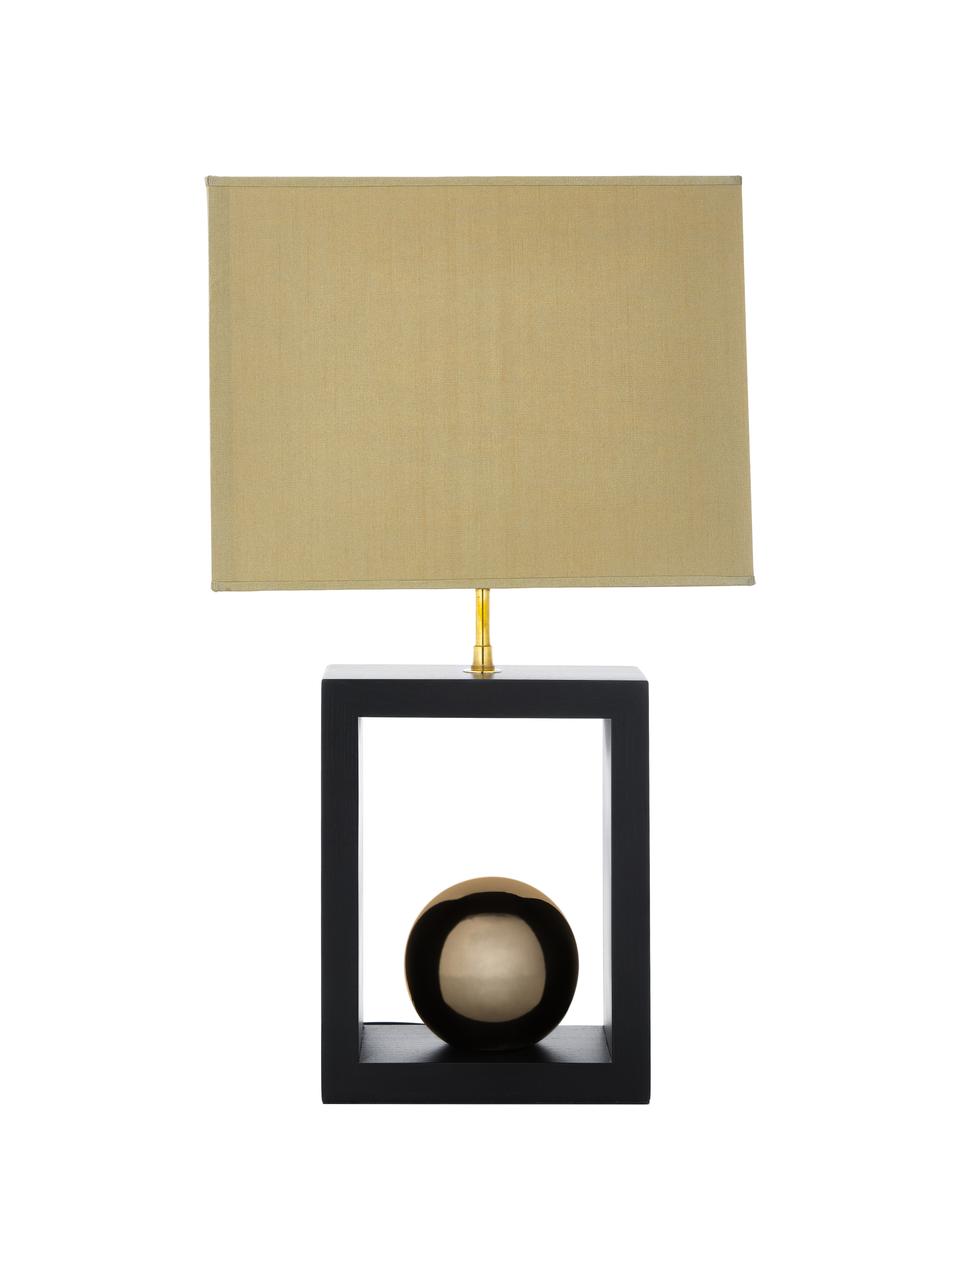 Tischlampe Scala aus Buchenholz, Lampenschirm: Polyester, Lampenfuß: Buchenholz, lackiert, Goldfarben, Braun, 30 x 54 cm